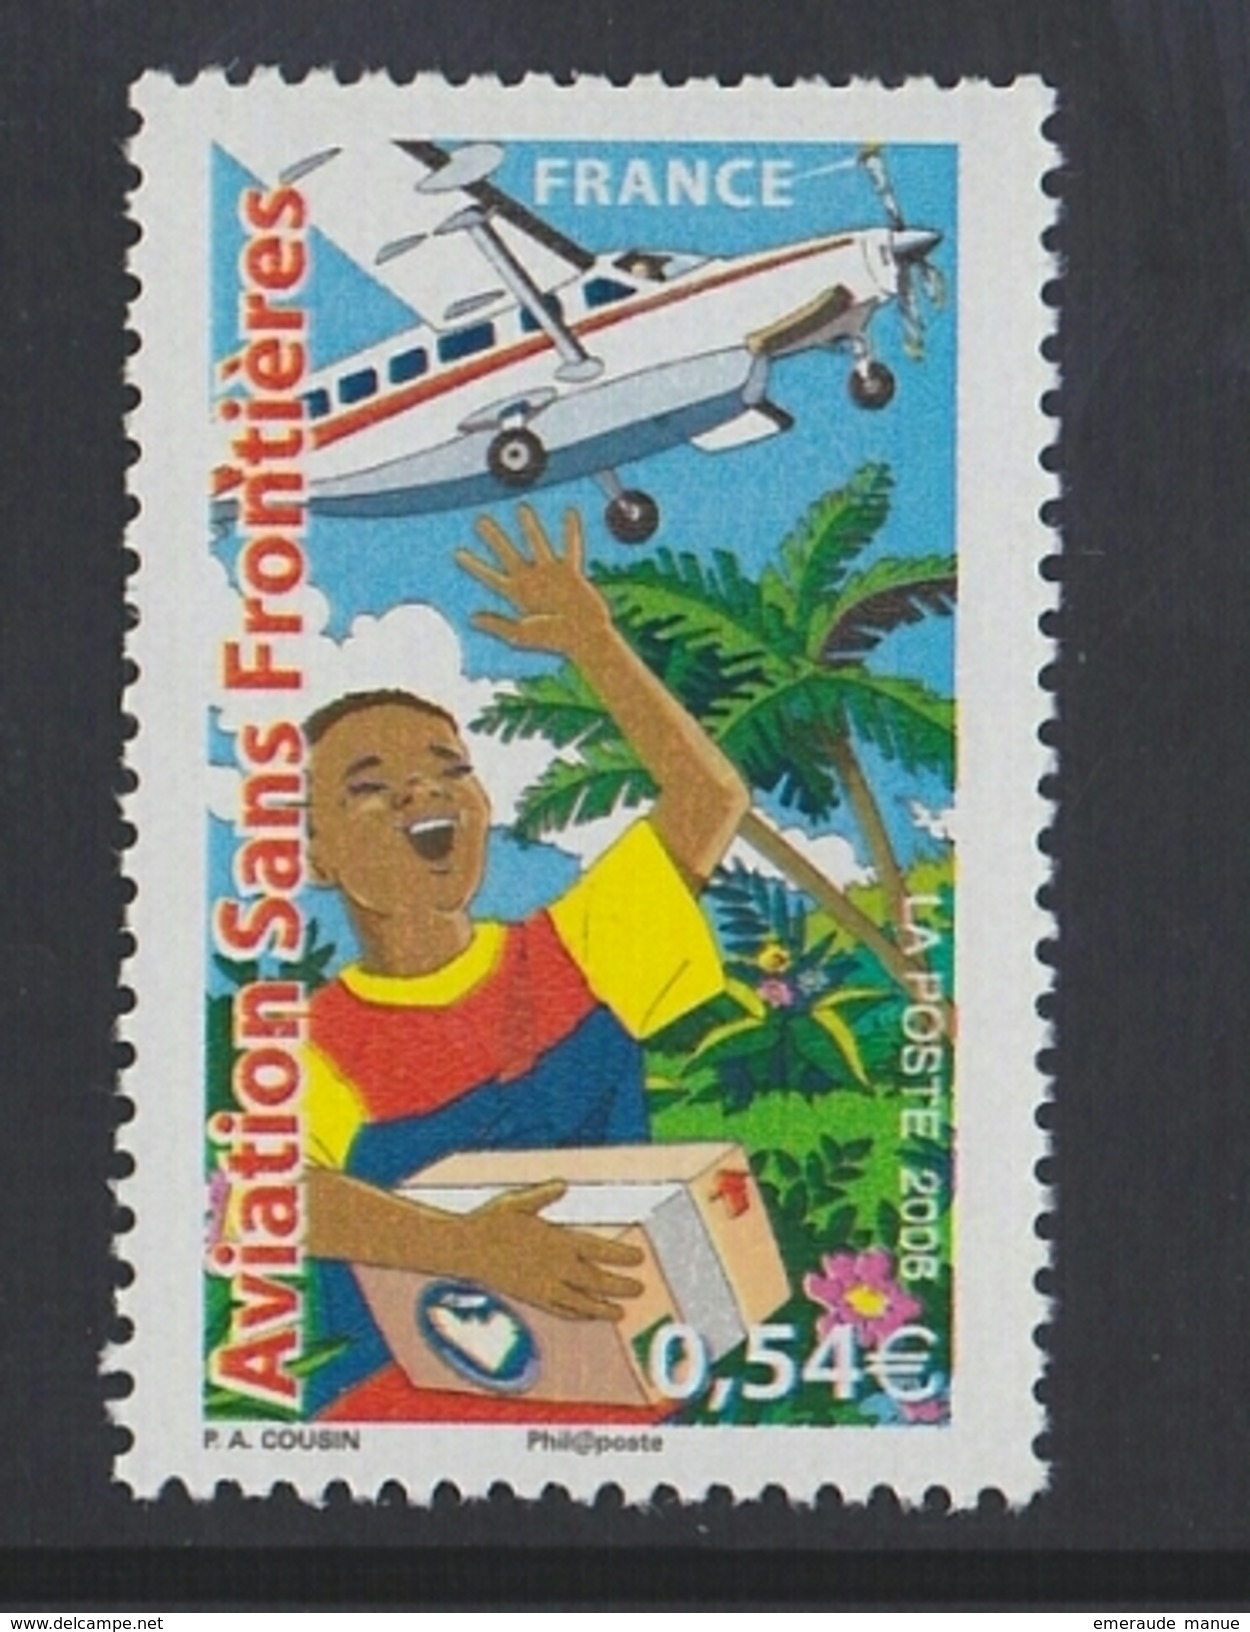 2006 - TIMBRE NEUF - 25ème Anniversaire D'Aviation Sans Frontières (ASF) - N° YT : 3974 - Ungebraucht